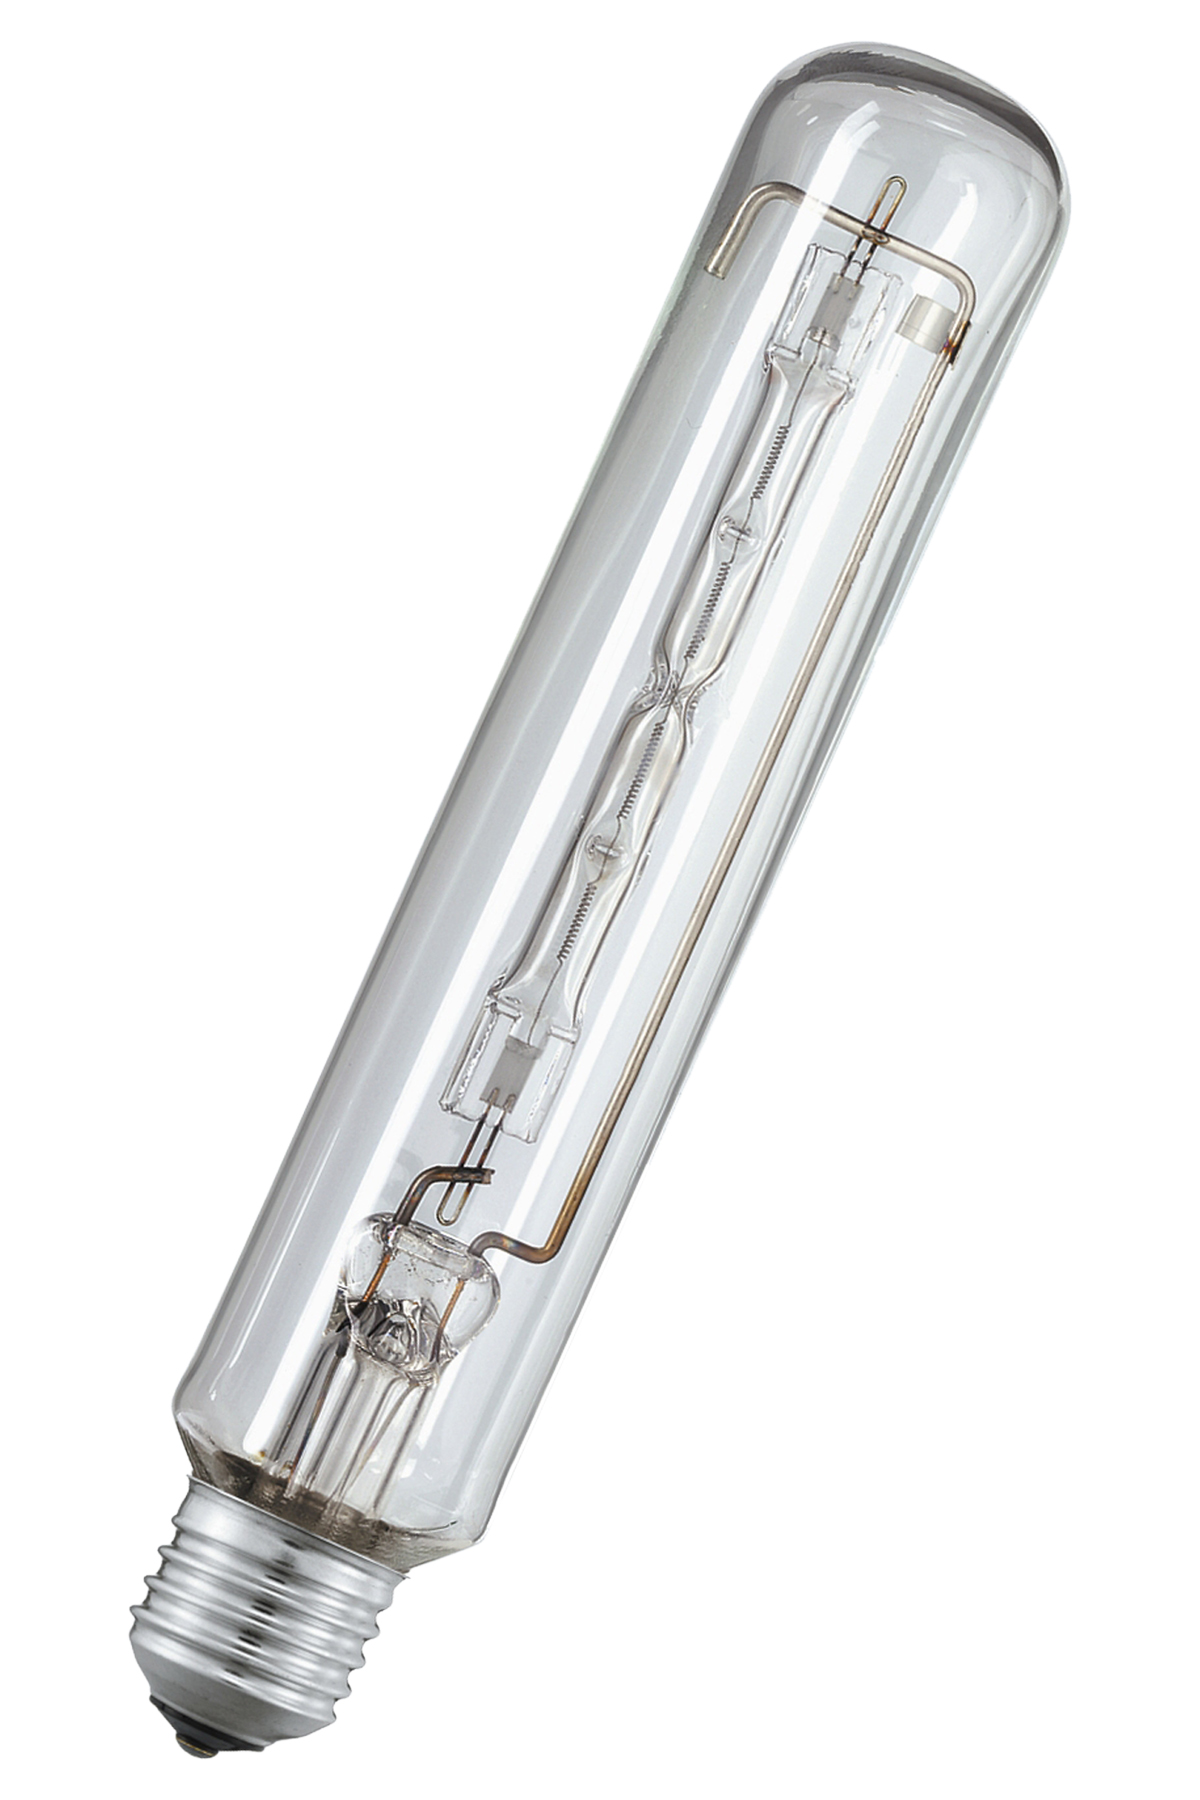 JTT Tubular Tungsten Halogen Lamp, 220-240V 500W E40, 791272 Seaforth  Marine